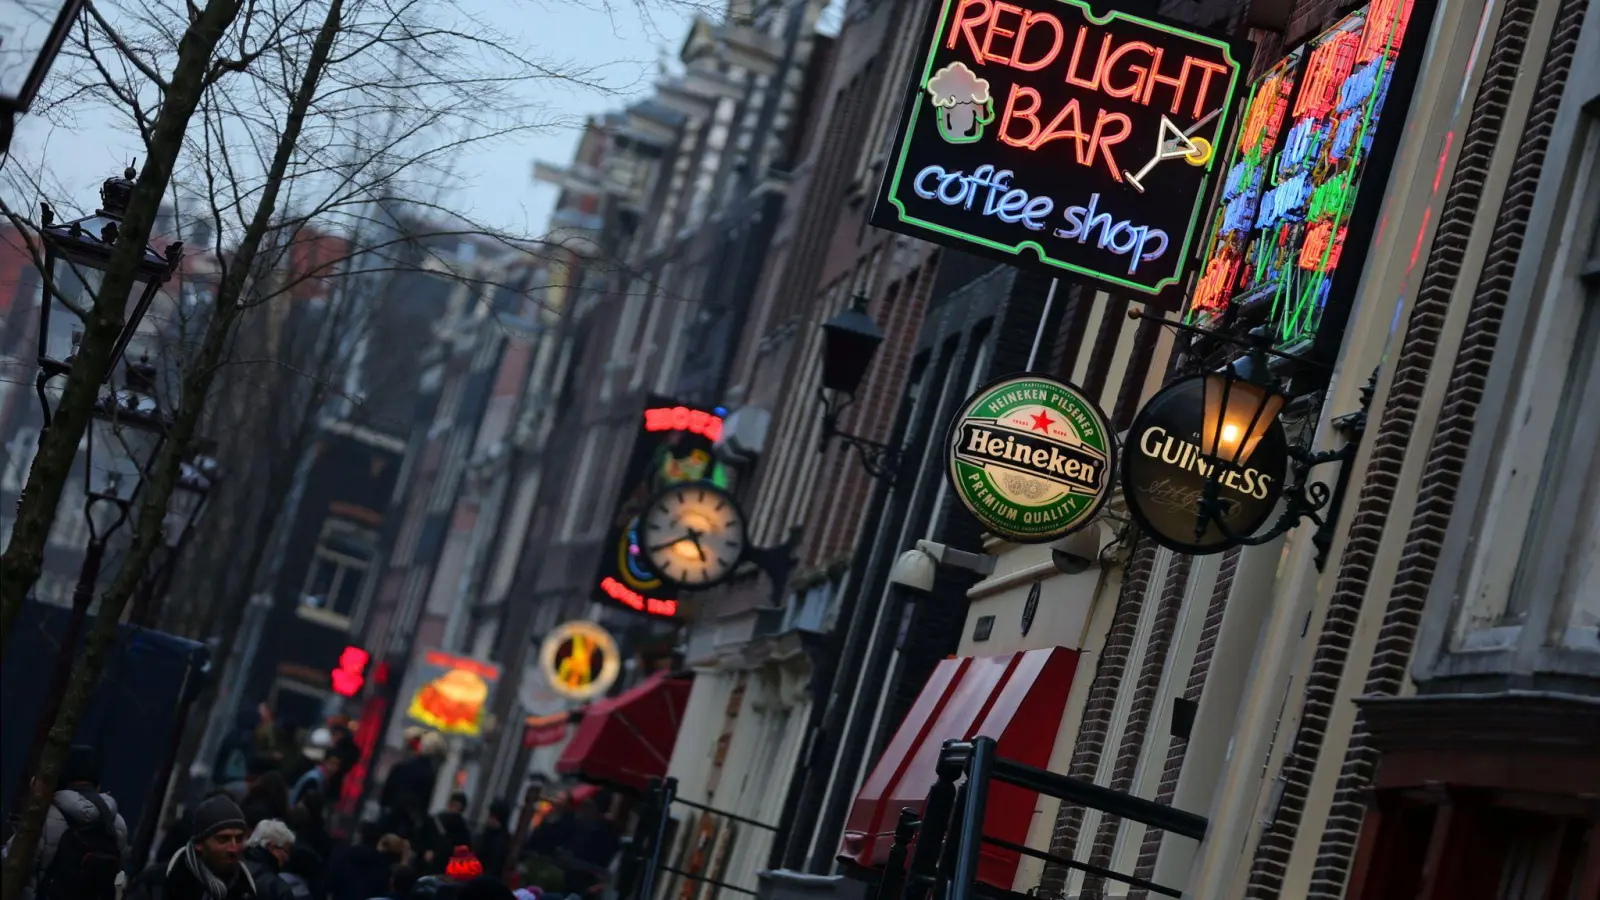 Ab dem 25. Mai gilt im alten Zentrum von Amsterdam ein Kiff-Verbot. Die Coffeeshops dürfen aber weiter weiche Drogen verkaufen. (Foto: picture alliance / dpa)